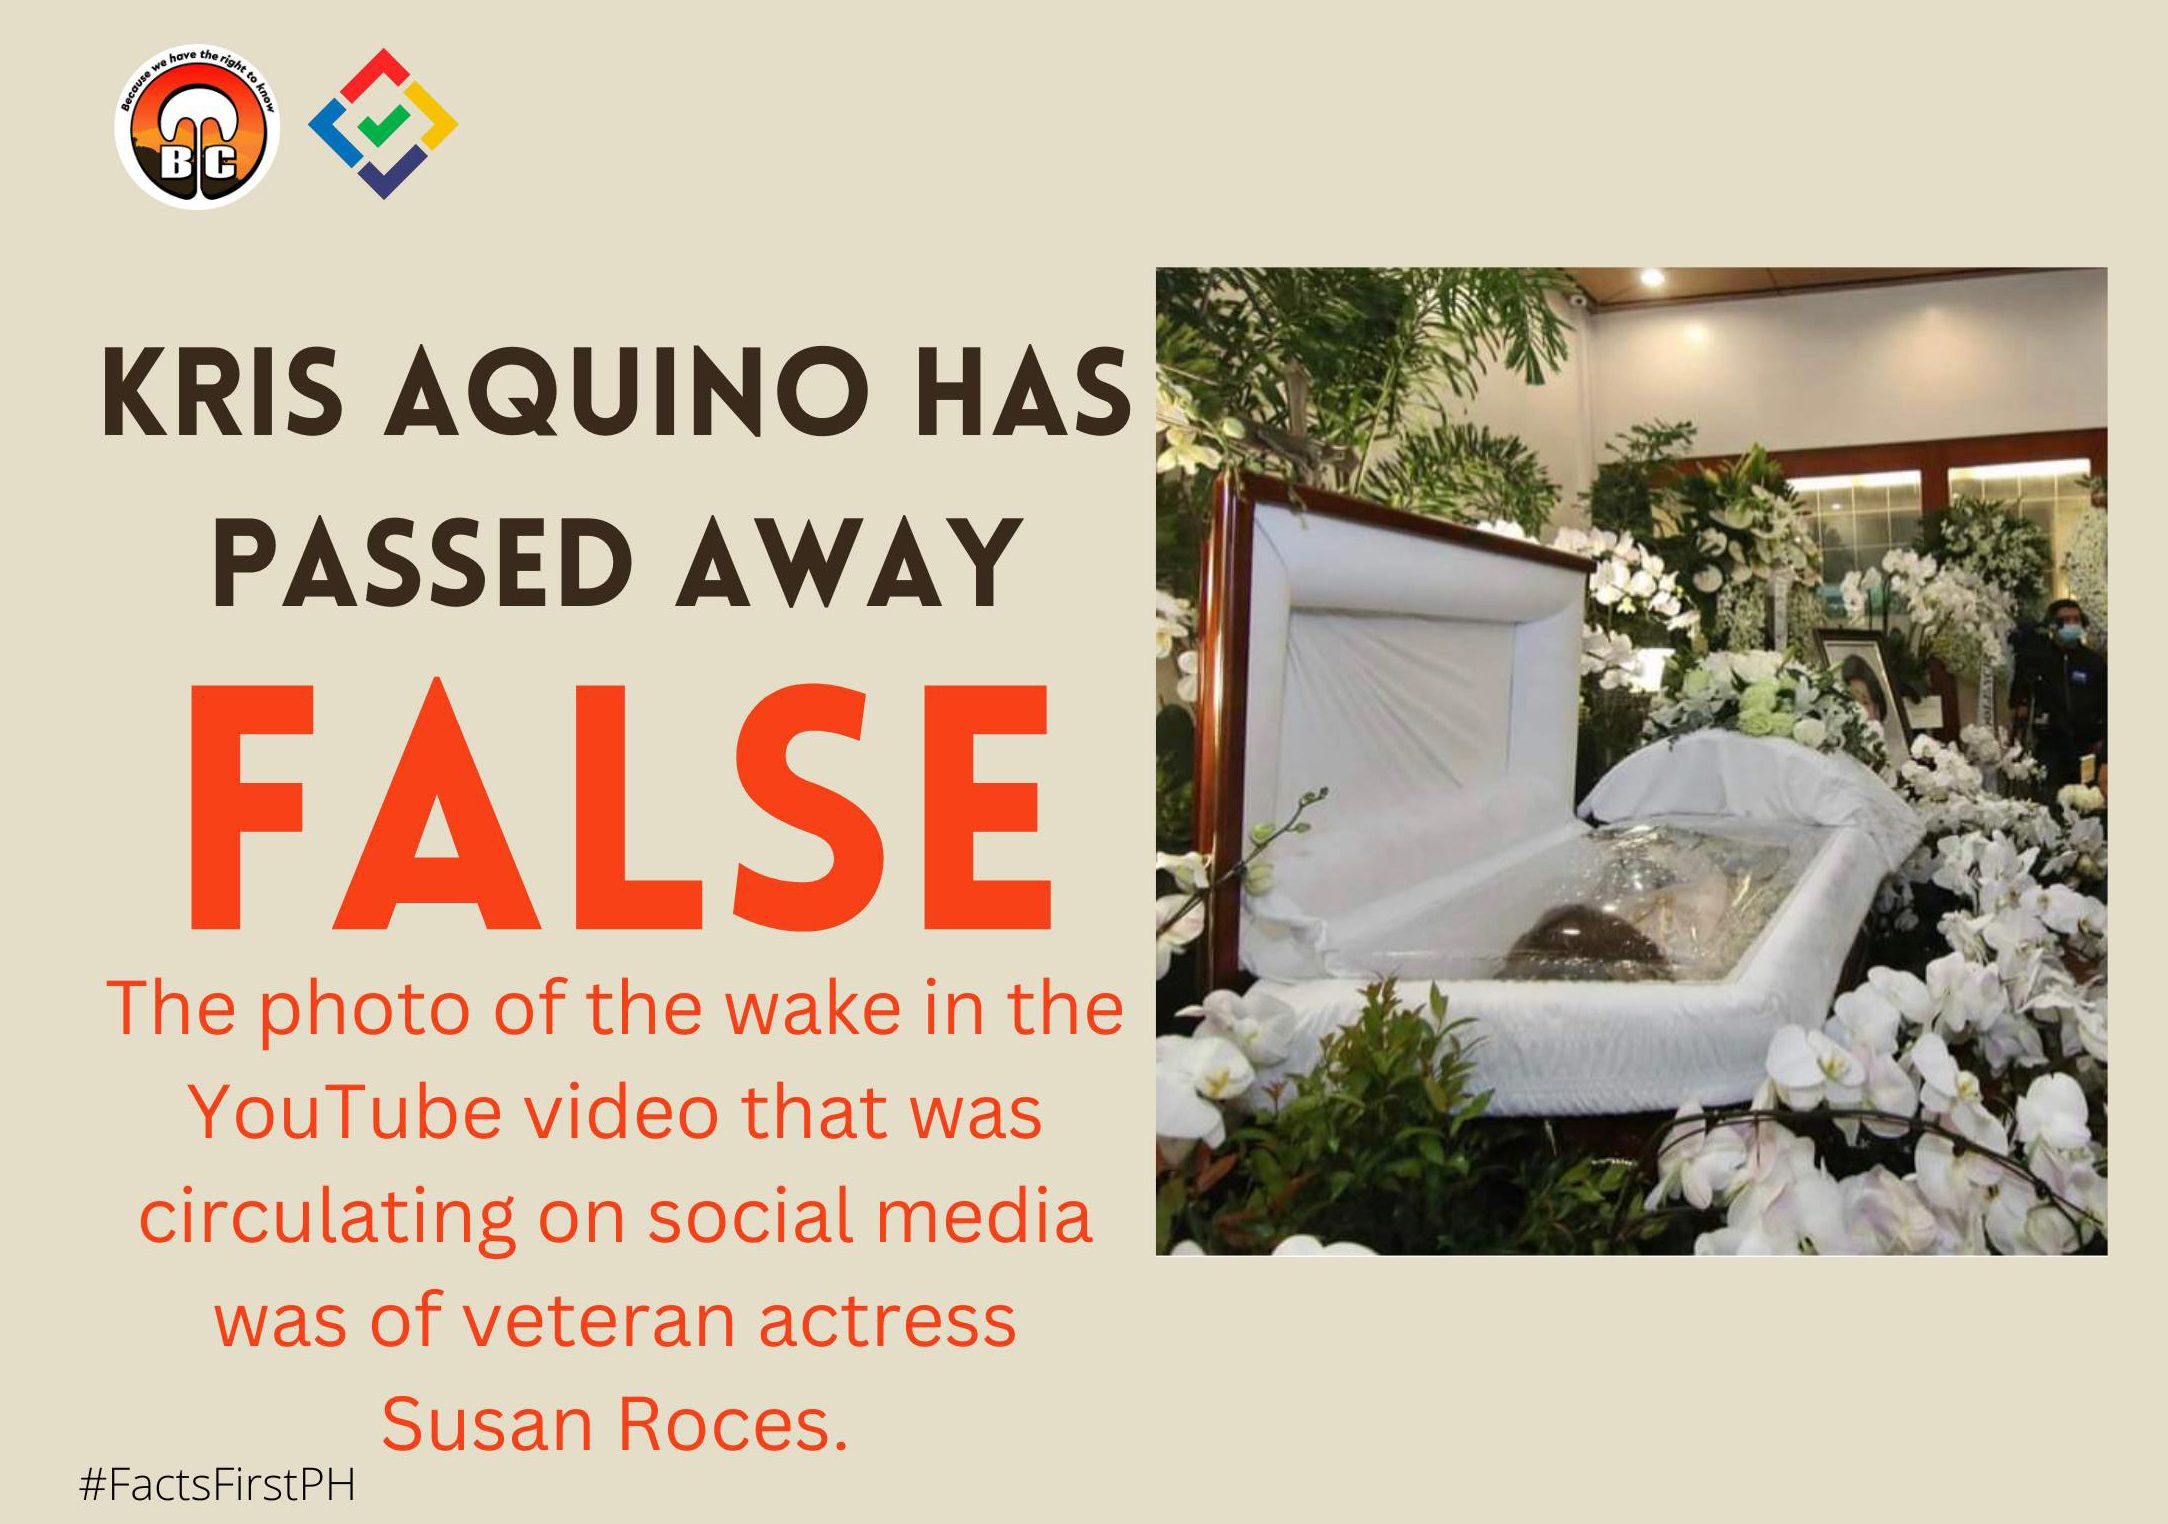 Fact Check: Kris Aquino has passed away